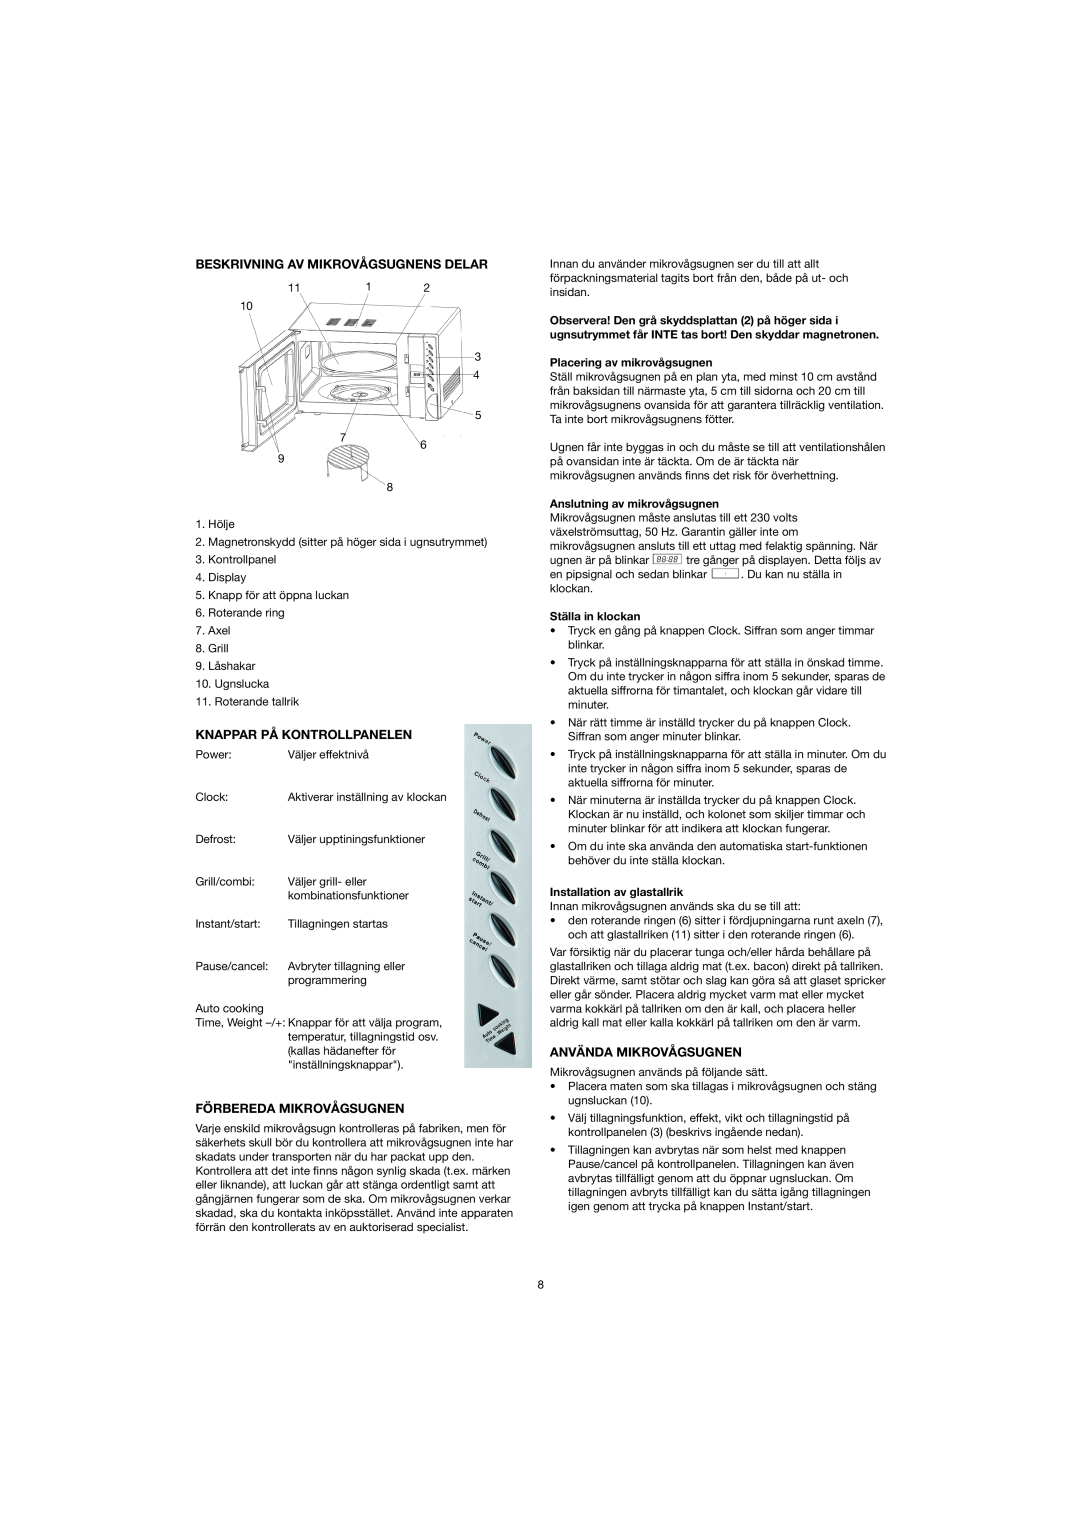 Melissa 753-082/083 manual Beskrivning Av Mikrovågsugnens Delar, Knappar På Kontrollpanelen, Förbereda Mikrovågsugnen 